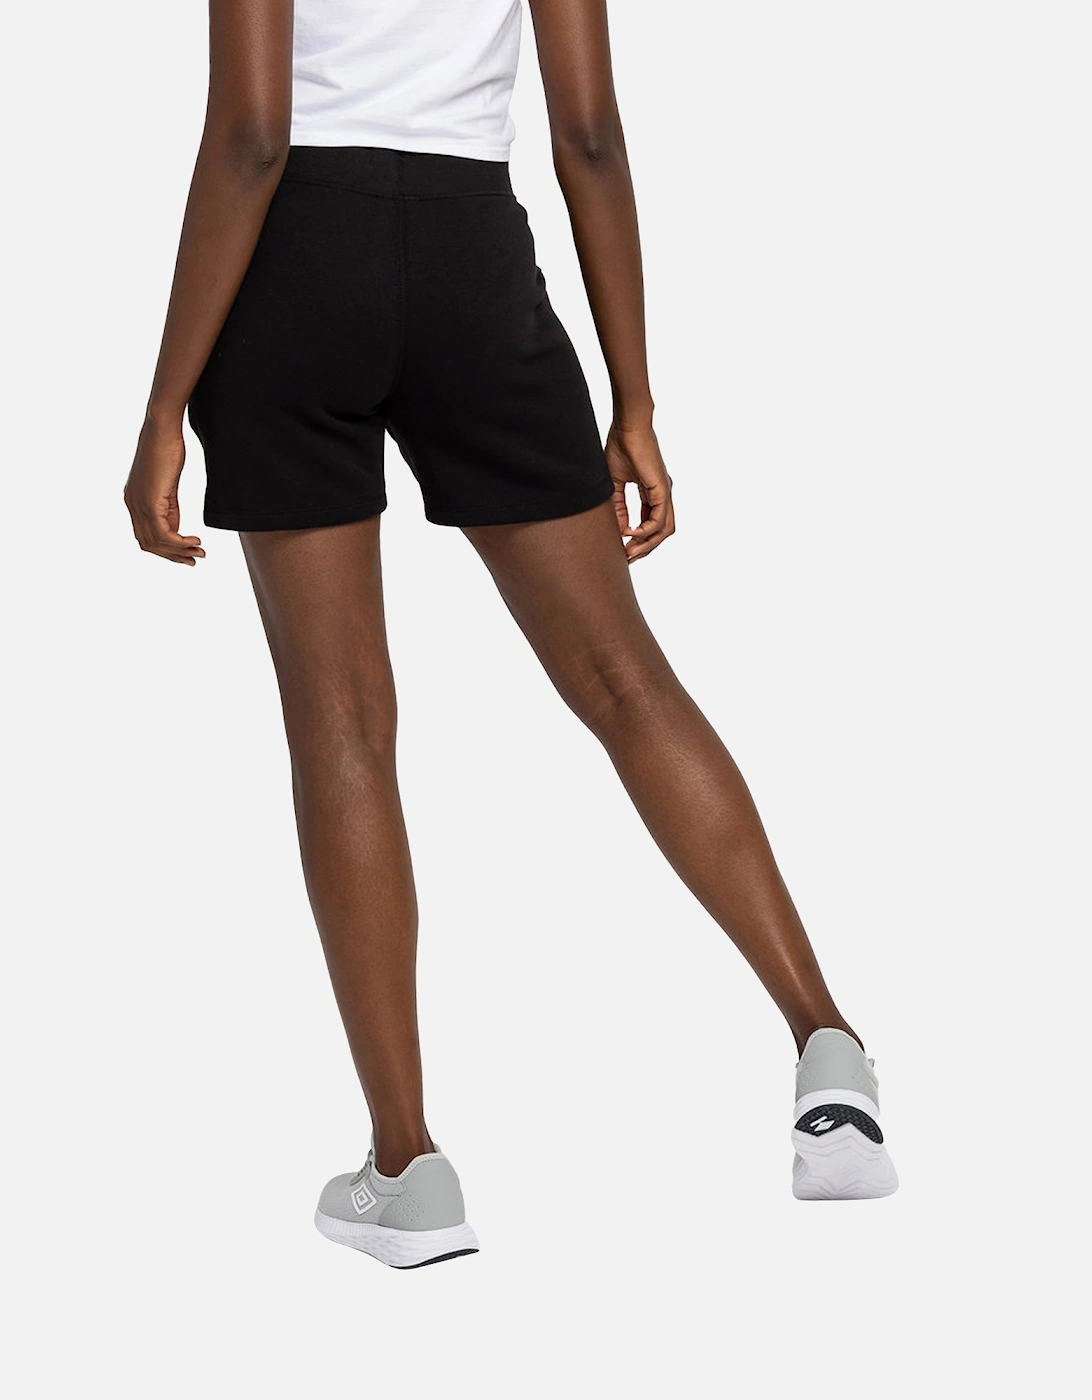 Womens/Ladies Pro Elite Fleece Shorts